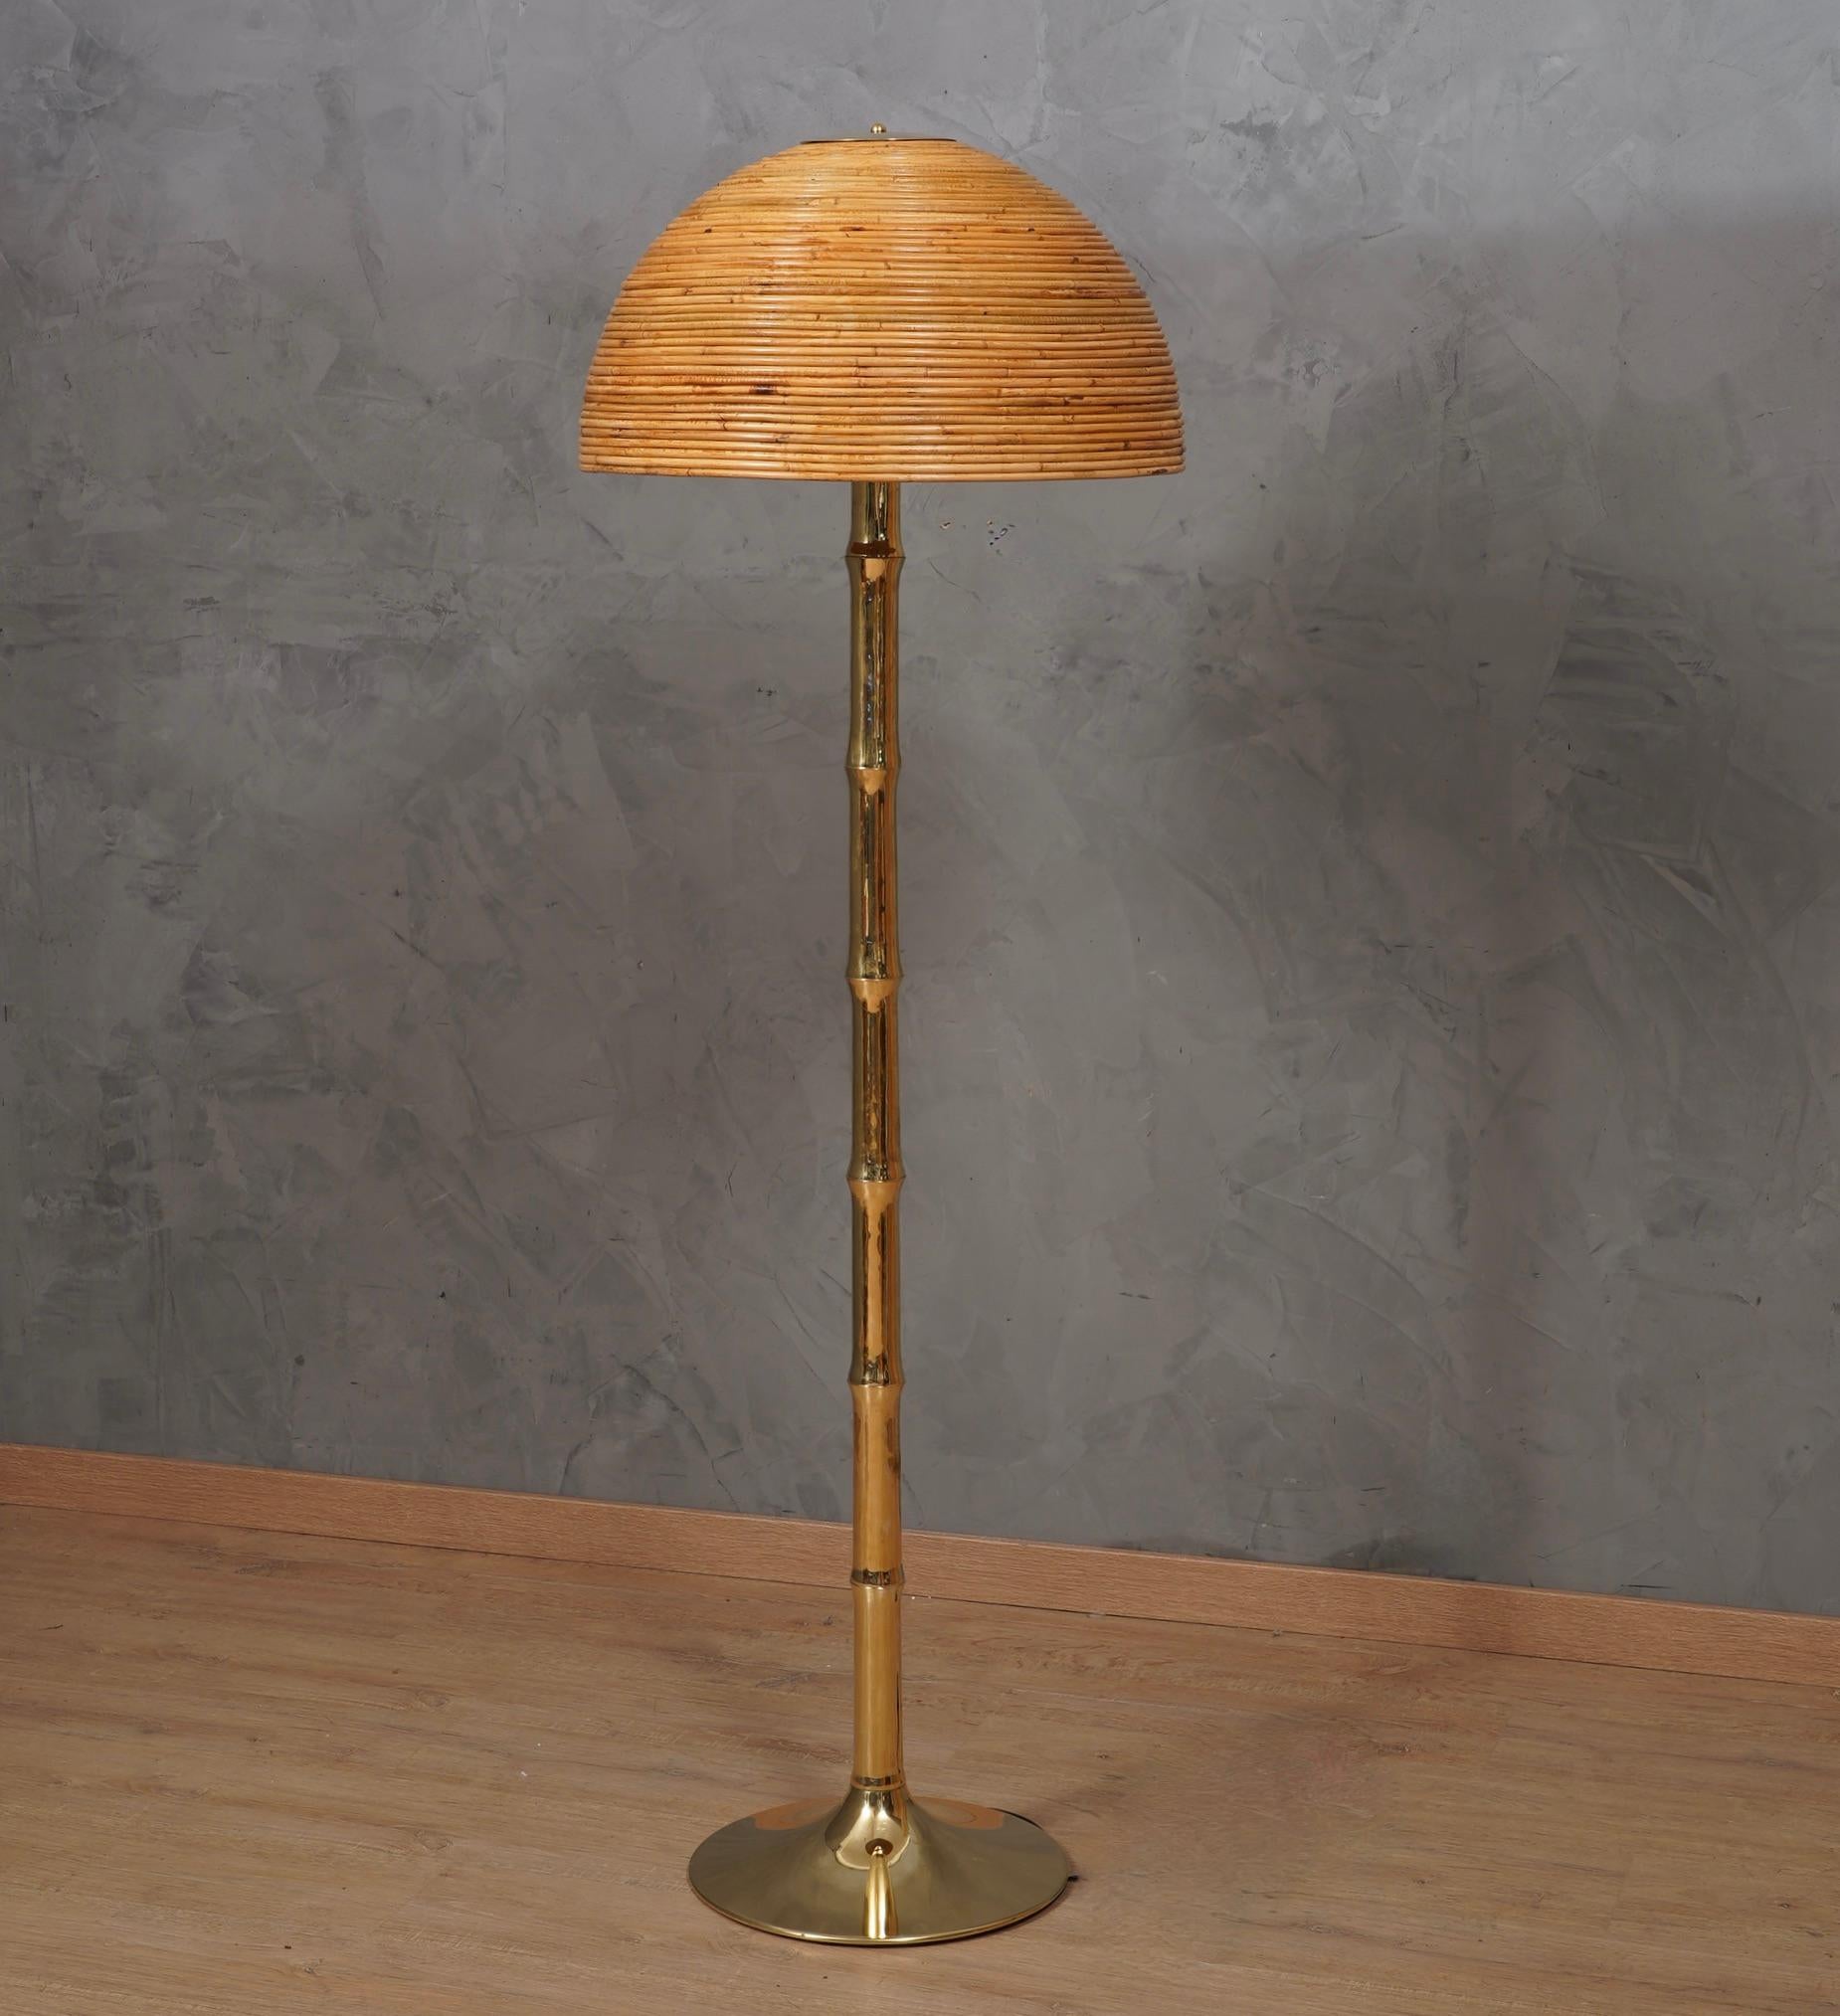 Un meuble exquis qui témoigne d'un design intemporel et d'un savoir-faire exceptionnel. Le lampadaire est très linéaire et décorera parfaitement votre intérieur. D'un point de vue esthétique, le lampadaire dans son ensemble est magnifique.

Le